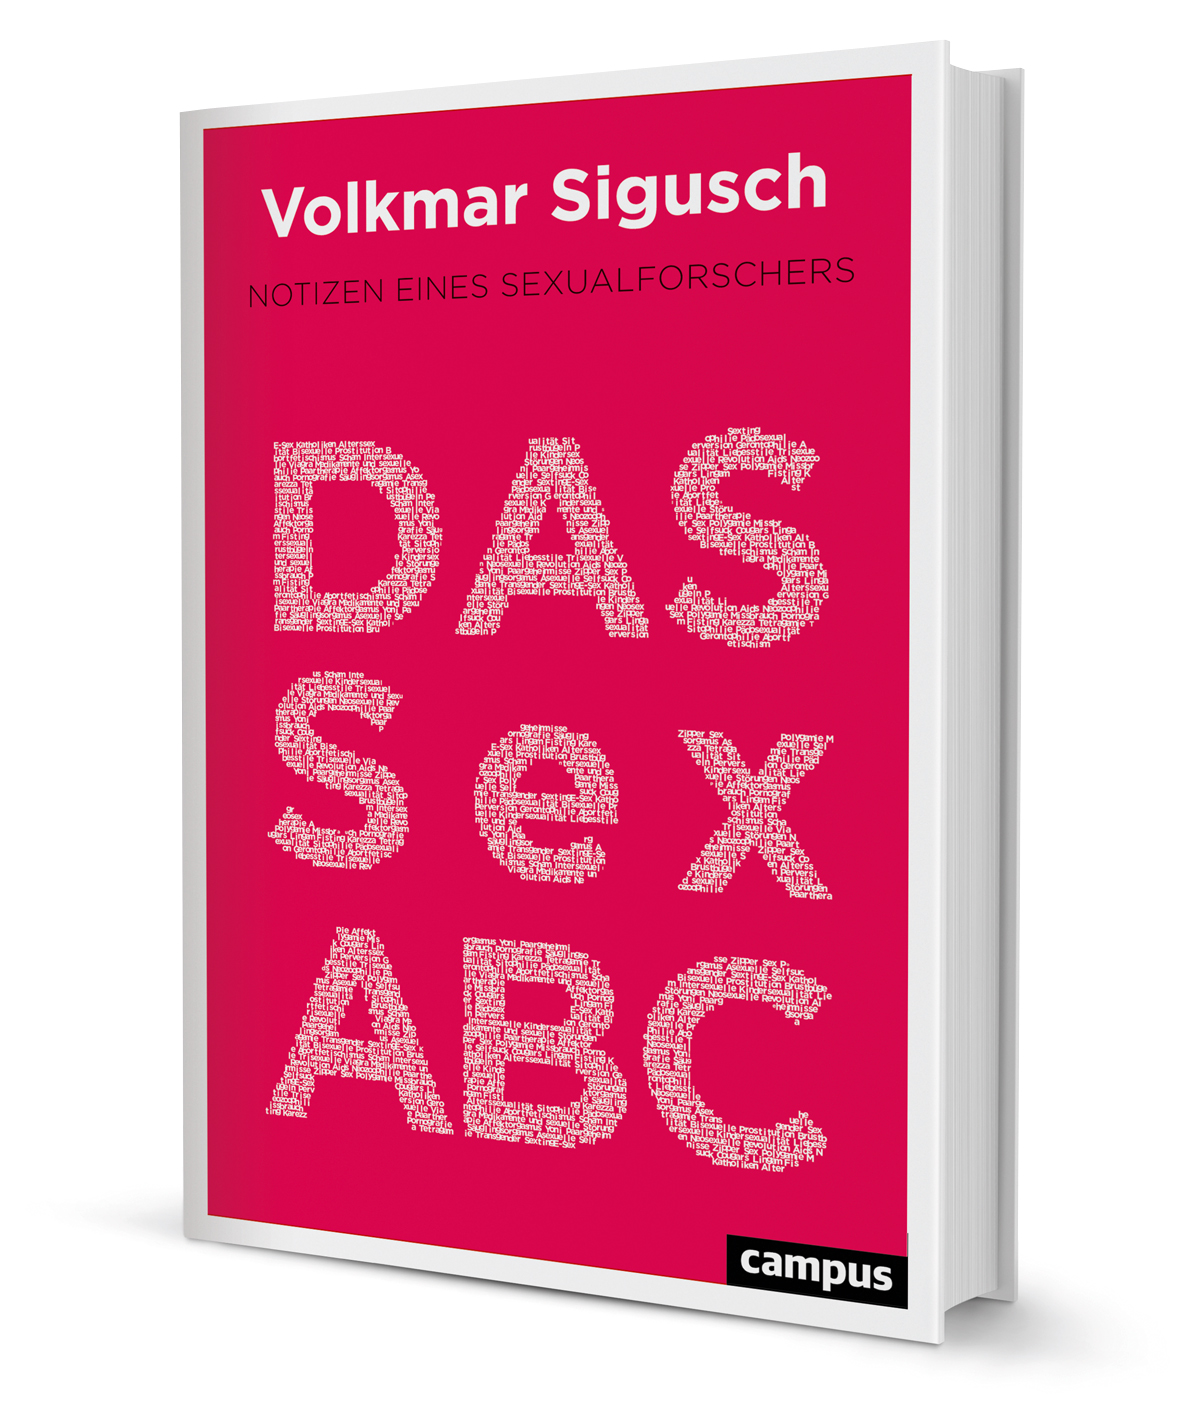 Das Sex Abc Ein Buch Von Volkmar Sigusch Campus Verlag 4921